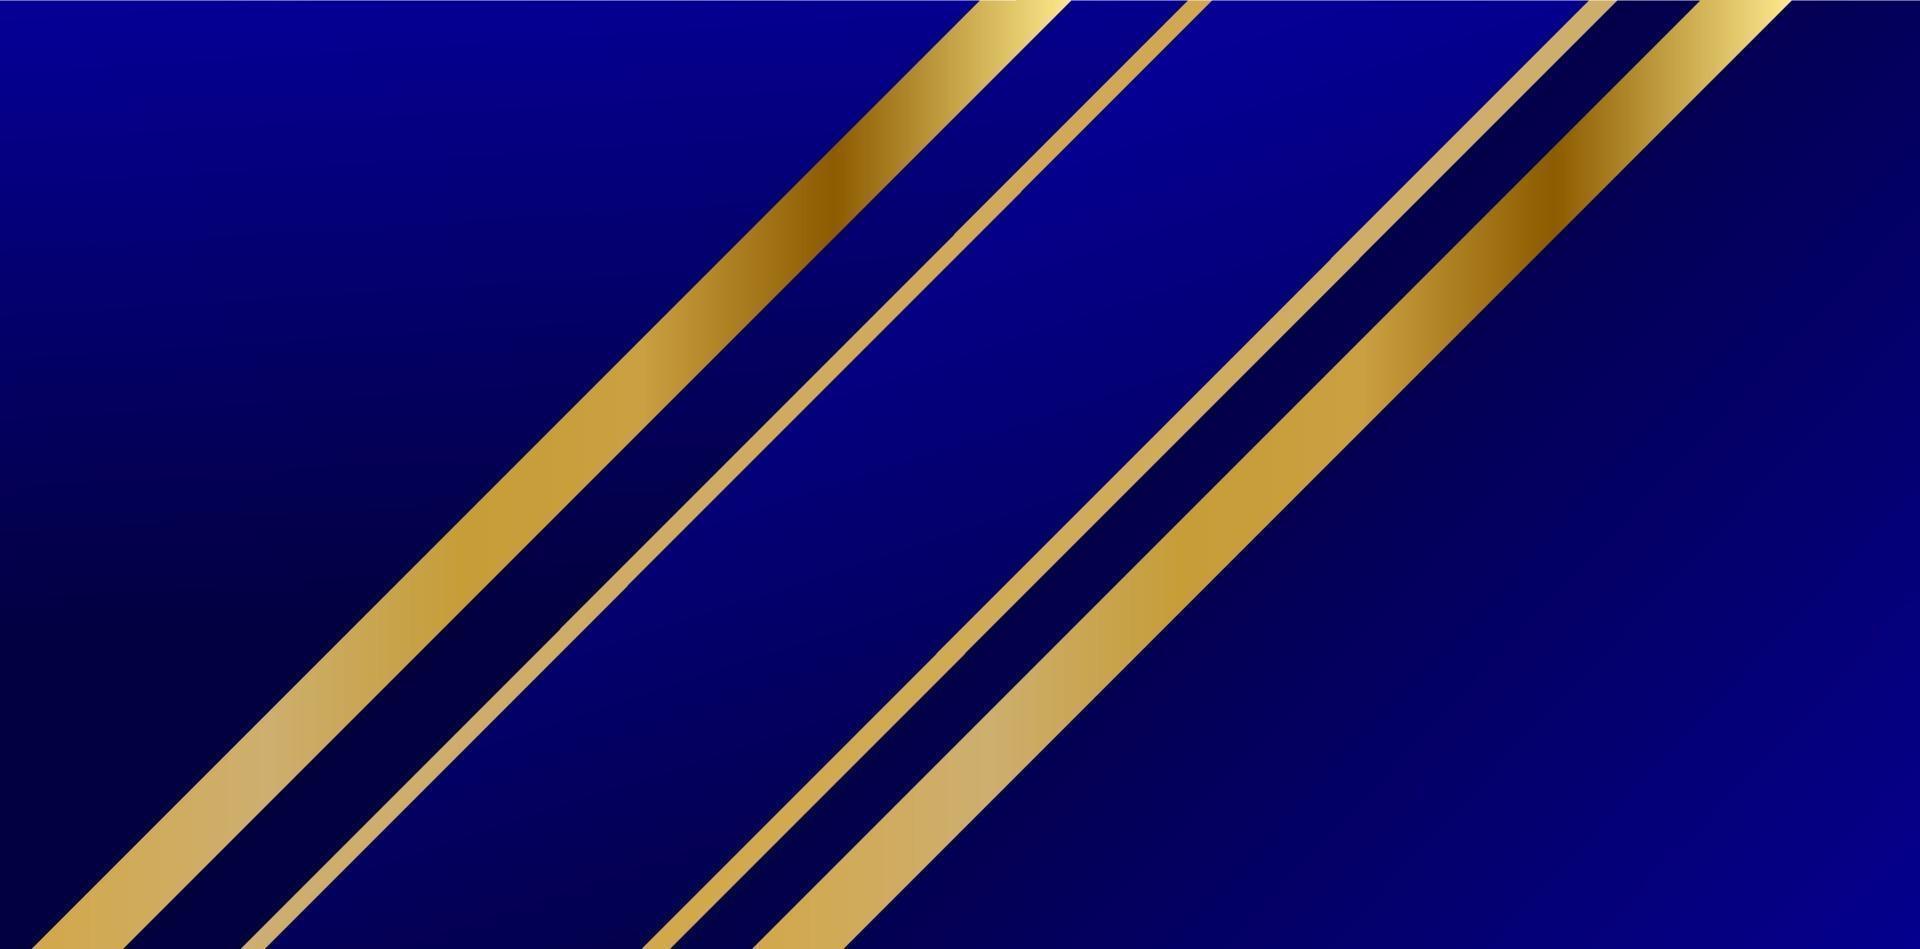 abstract veelhoekig patroonluxe donkerblauw met goud vector